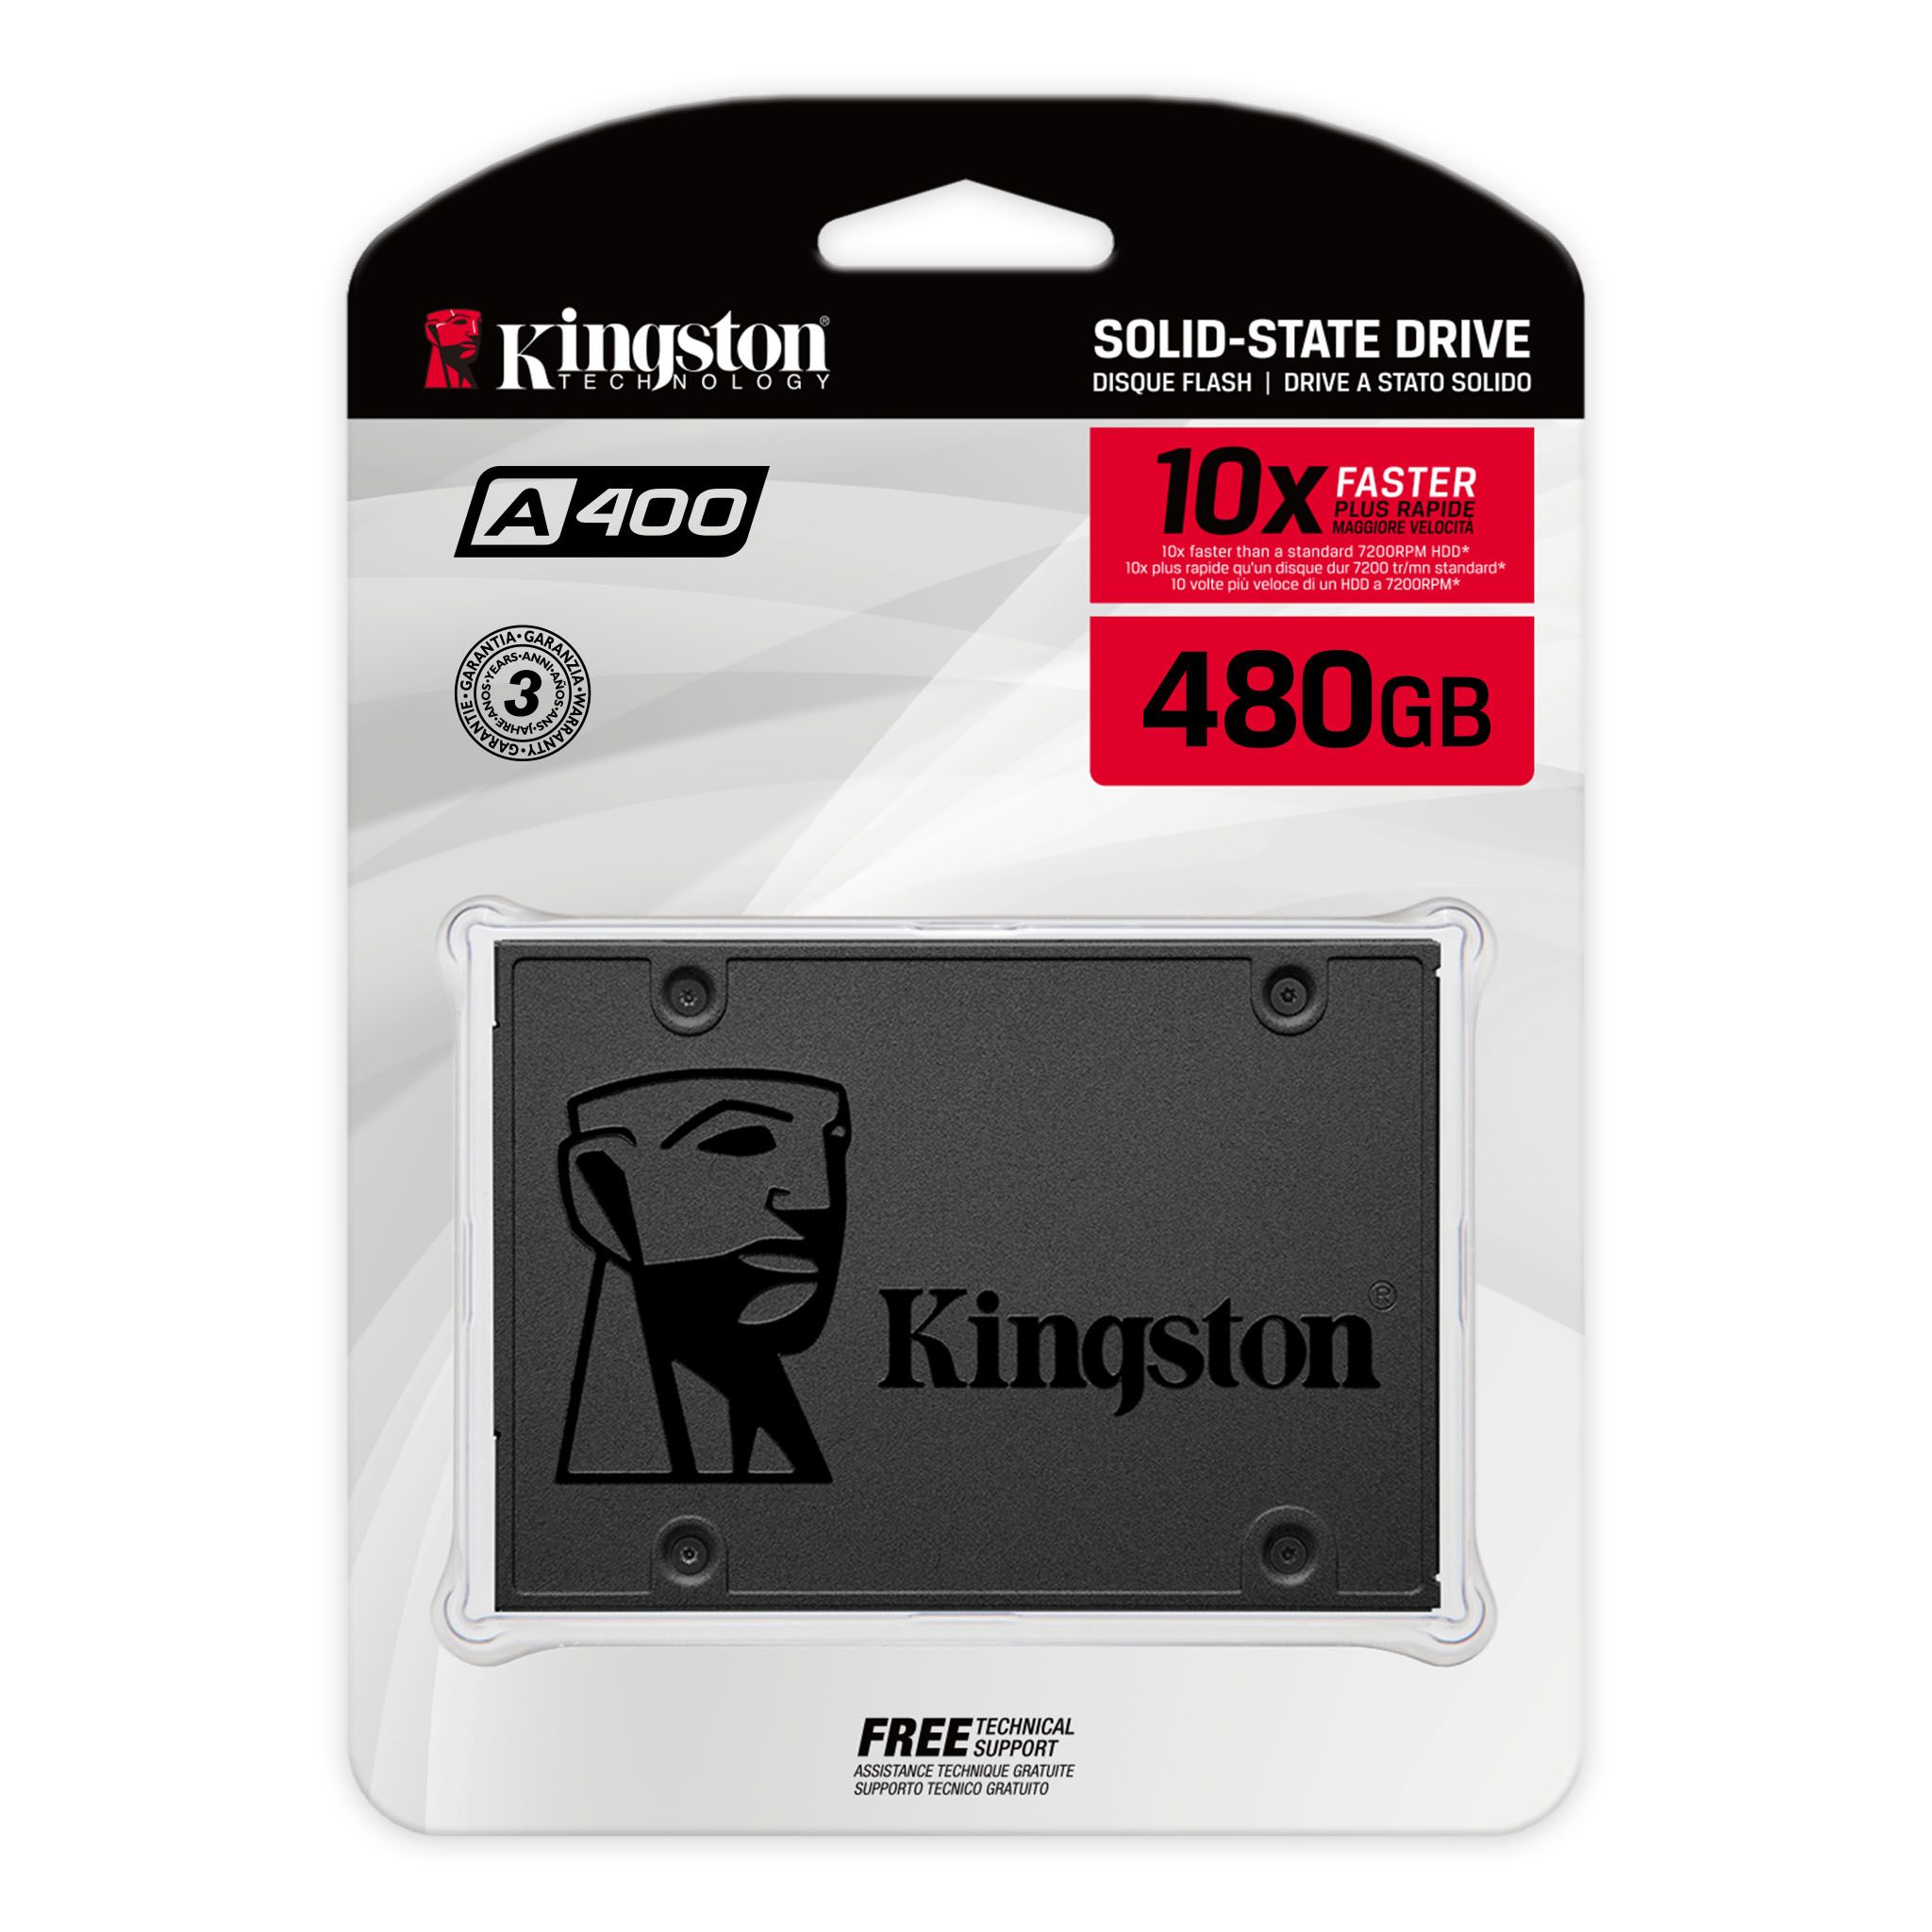 Kingston A400 480Gb 2.5吋SSD 固態硬碟 #sA400s37/480g